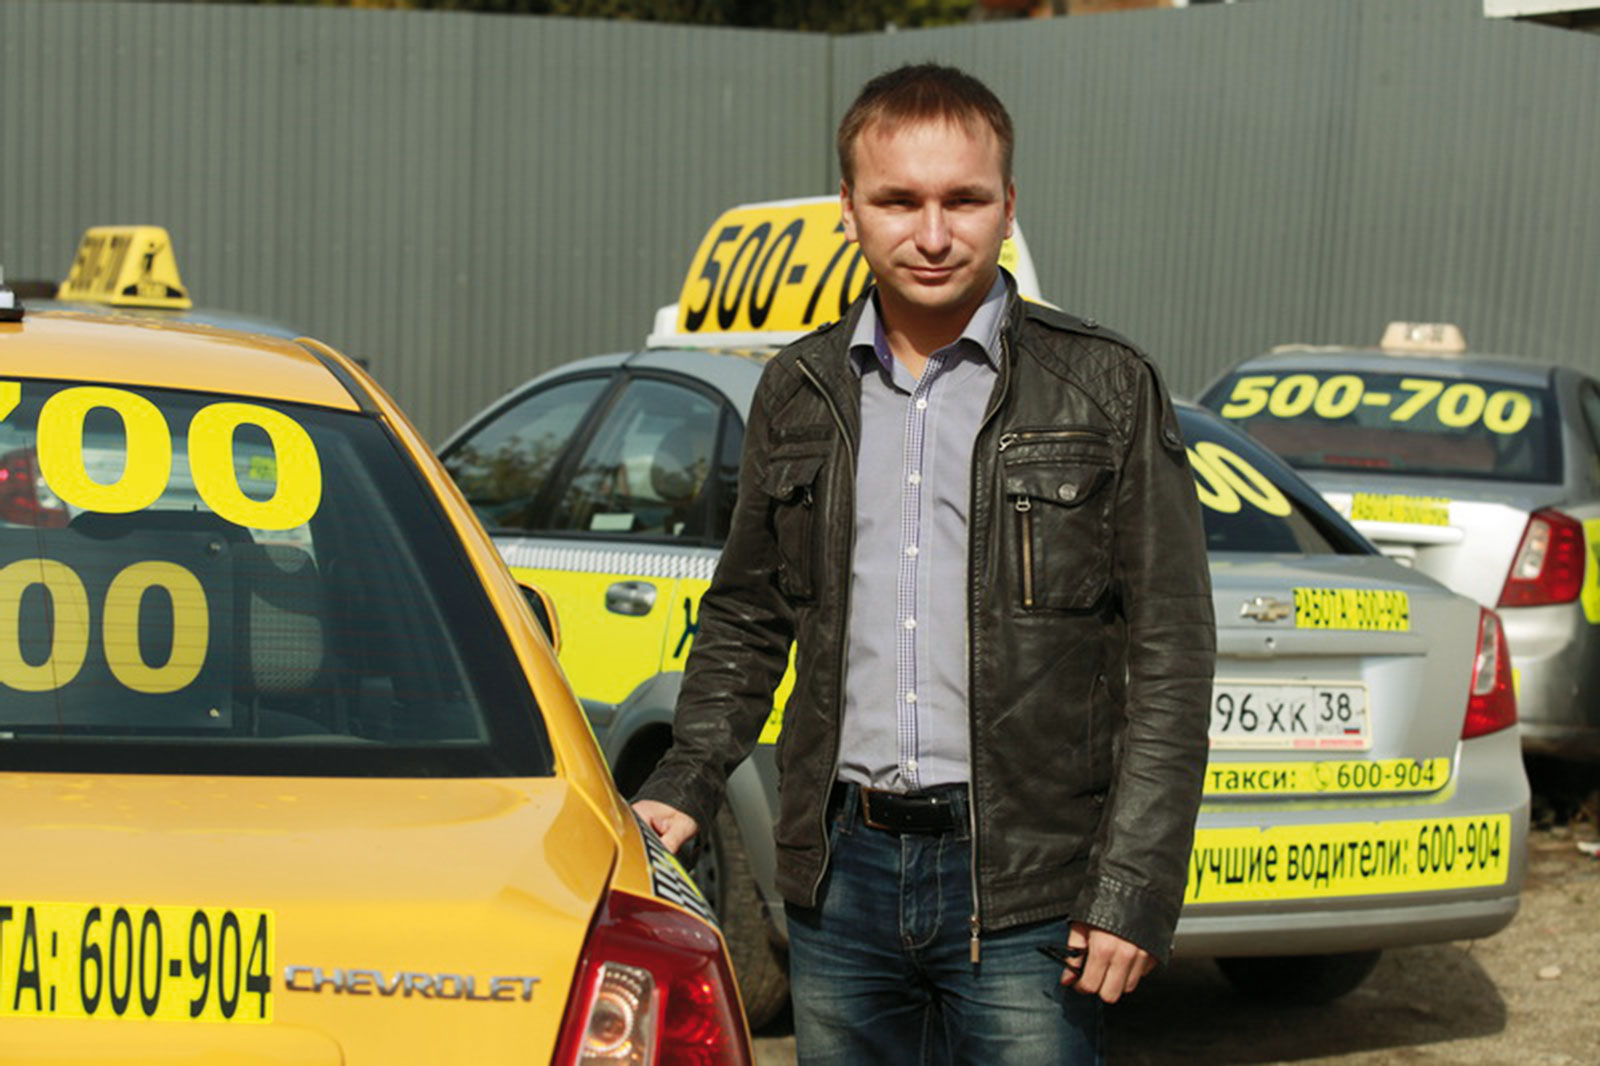 Водитель такси иркутск